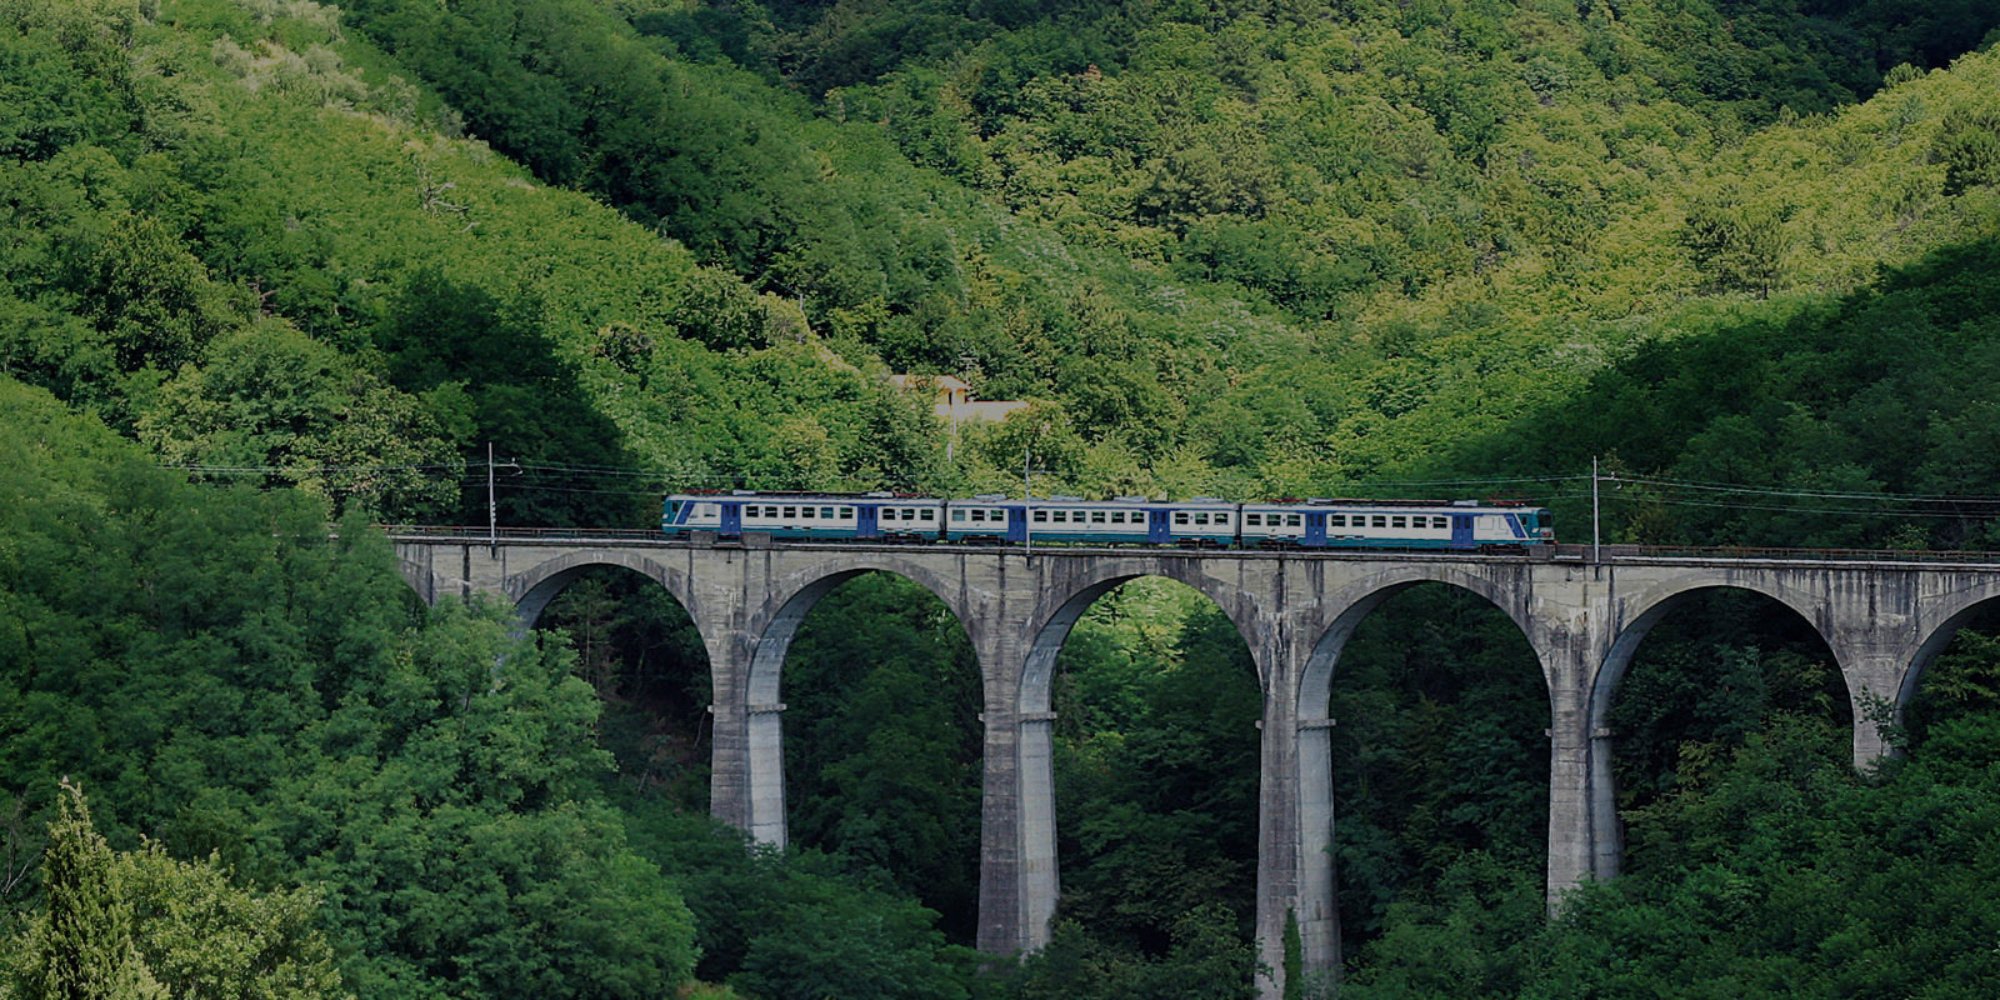 La ferrovia turistica Porrettana Express sulla montagna pistoiese